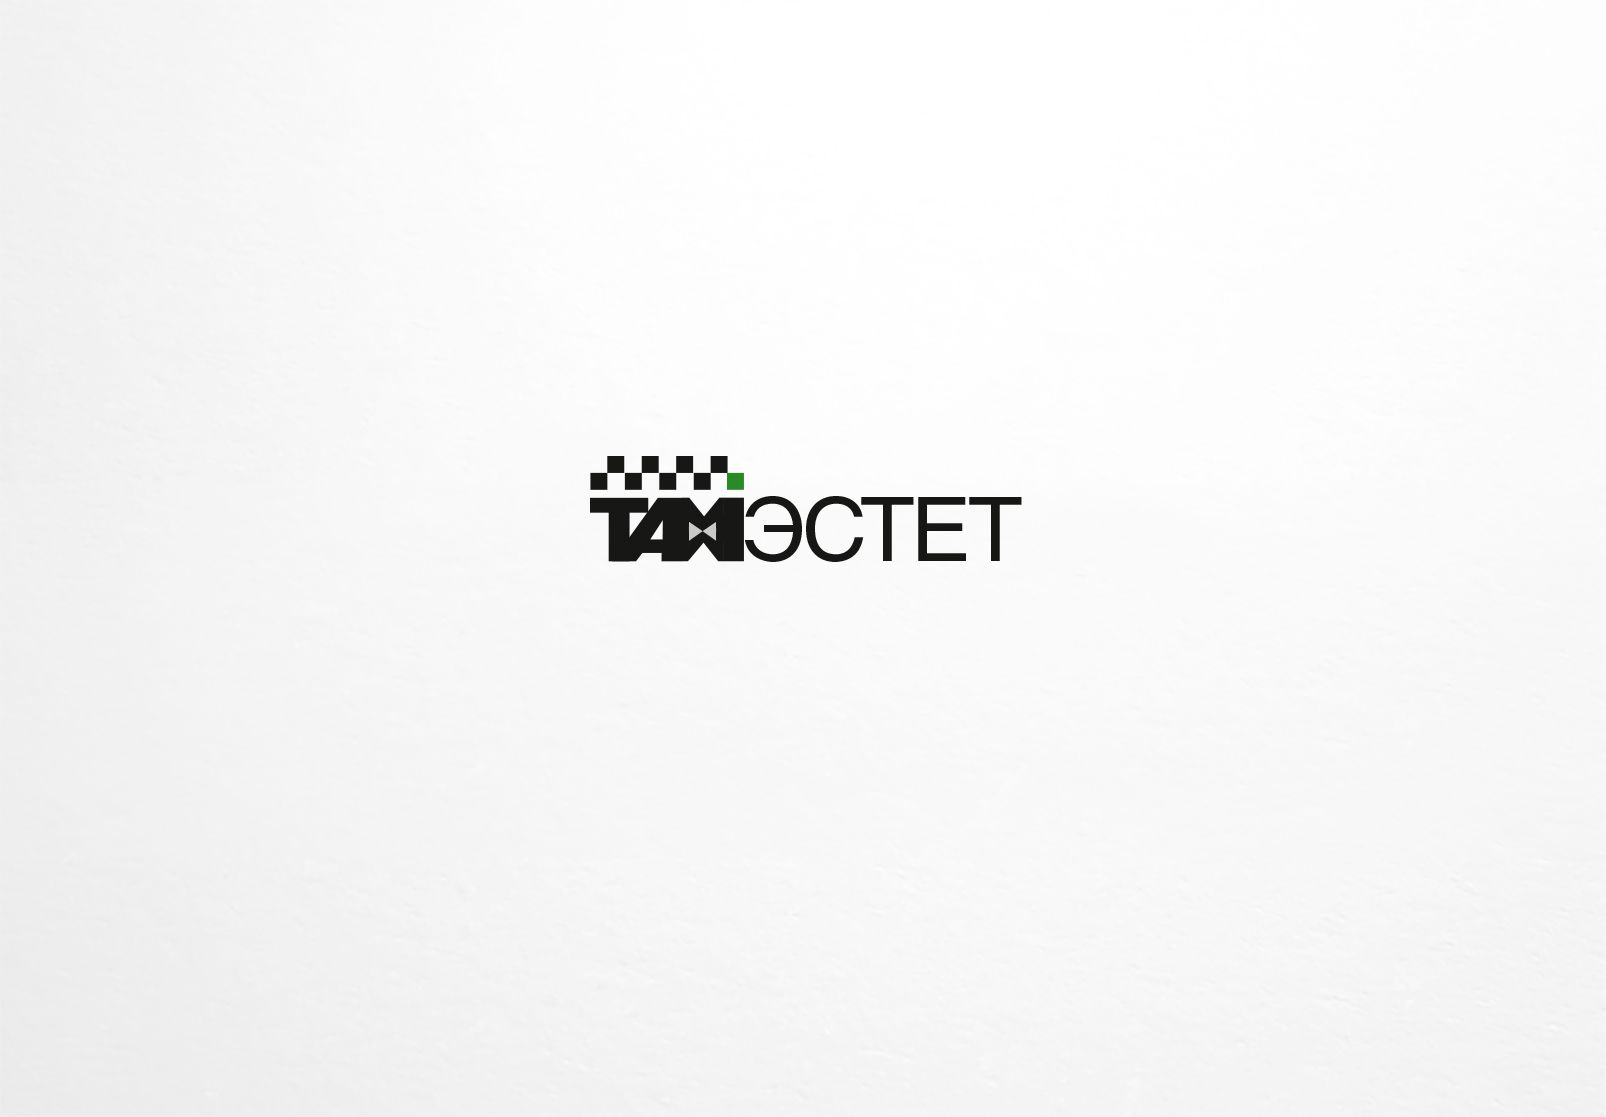 Логотип для taxi-estet.ru - дизайнер dron55